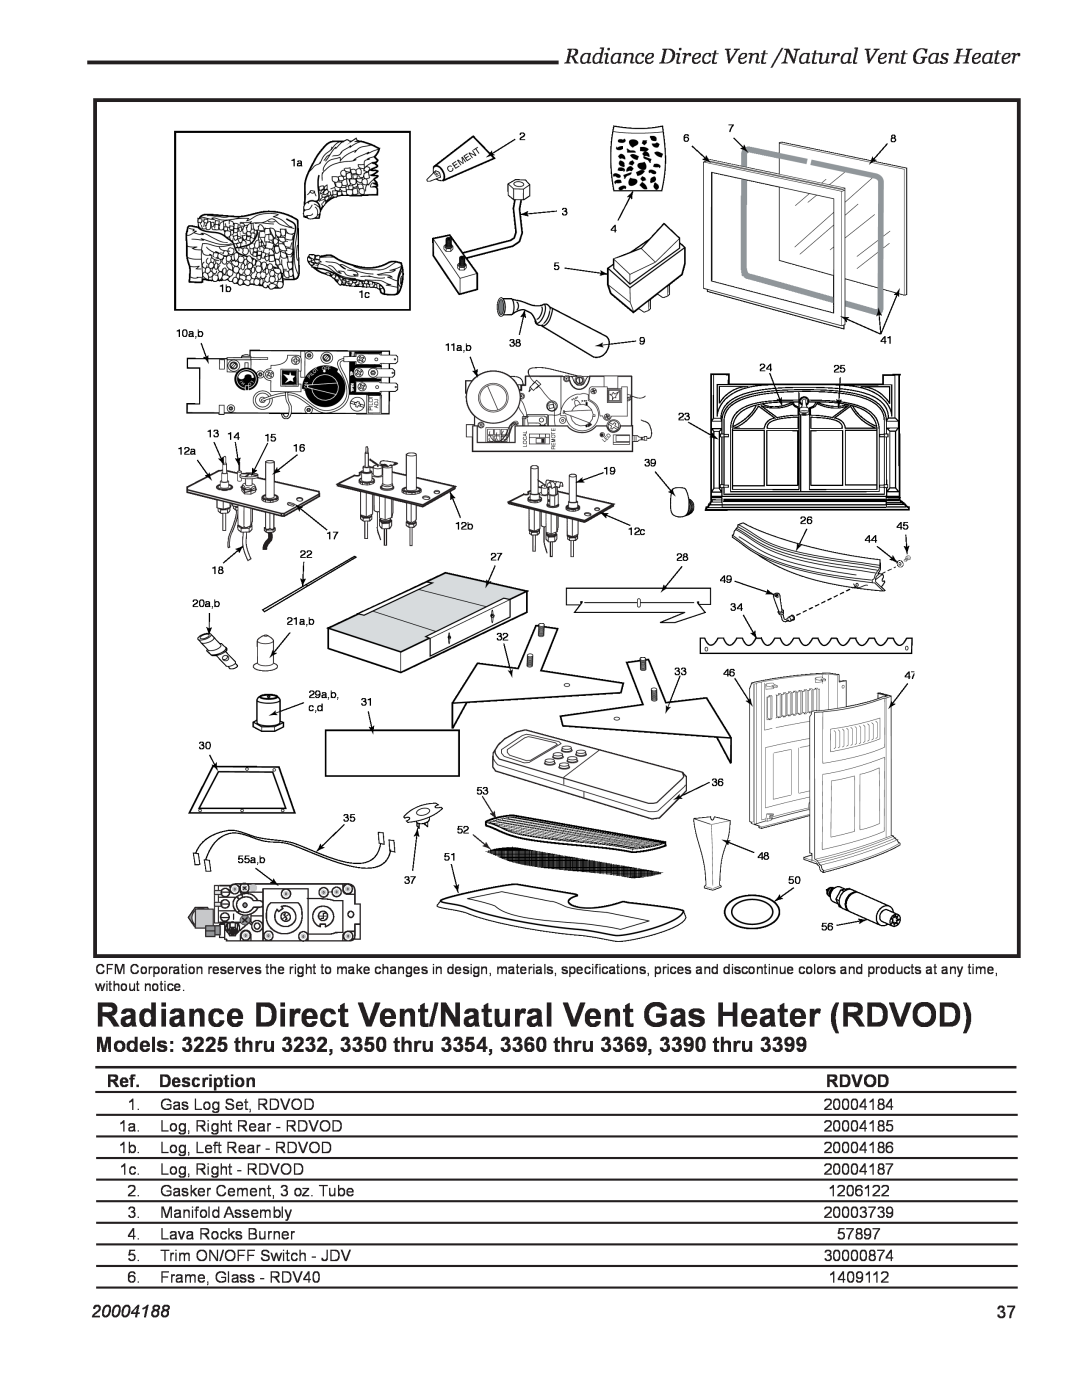 Vermont Casting 3390, 3399, 3369, 3354, 3232, 3225 Radiance Direct Vent /Natural Vent Gas Heater, Description, Rdvod, 20004188 